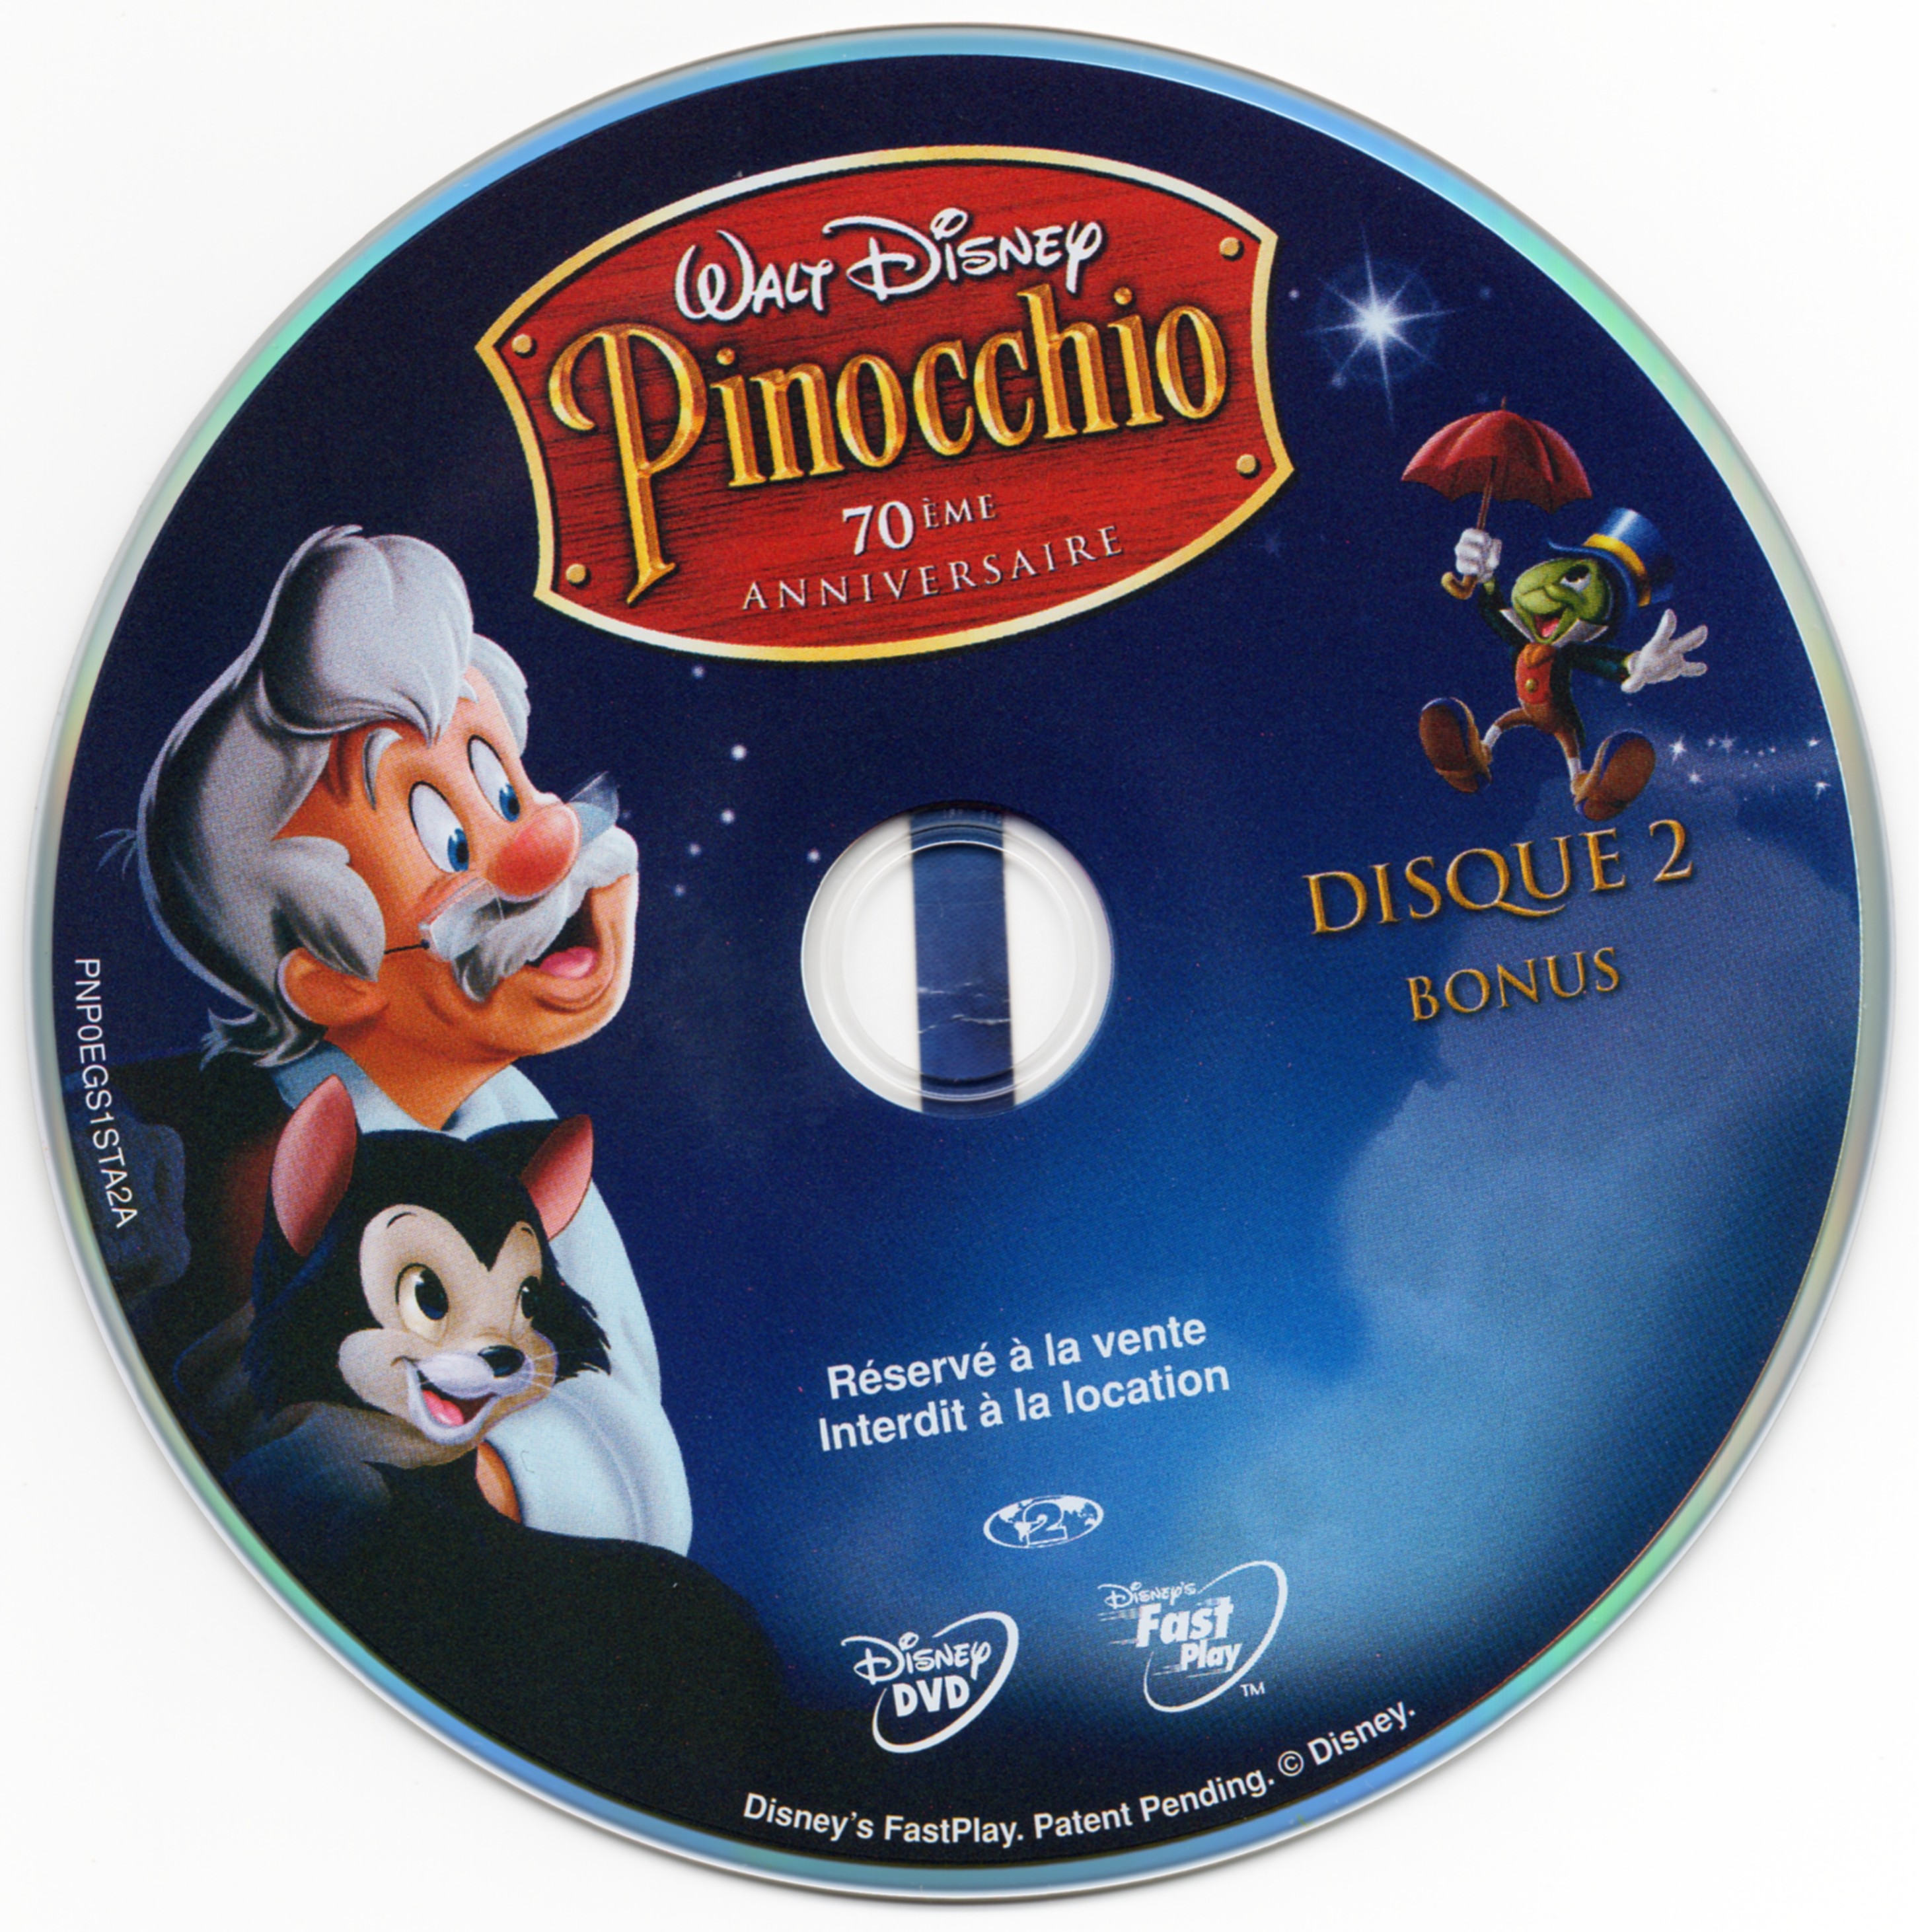 Pinocchio DISC 2